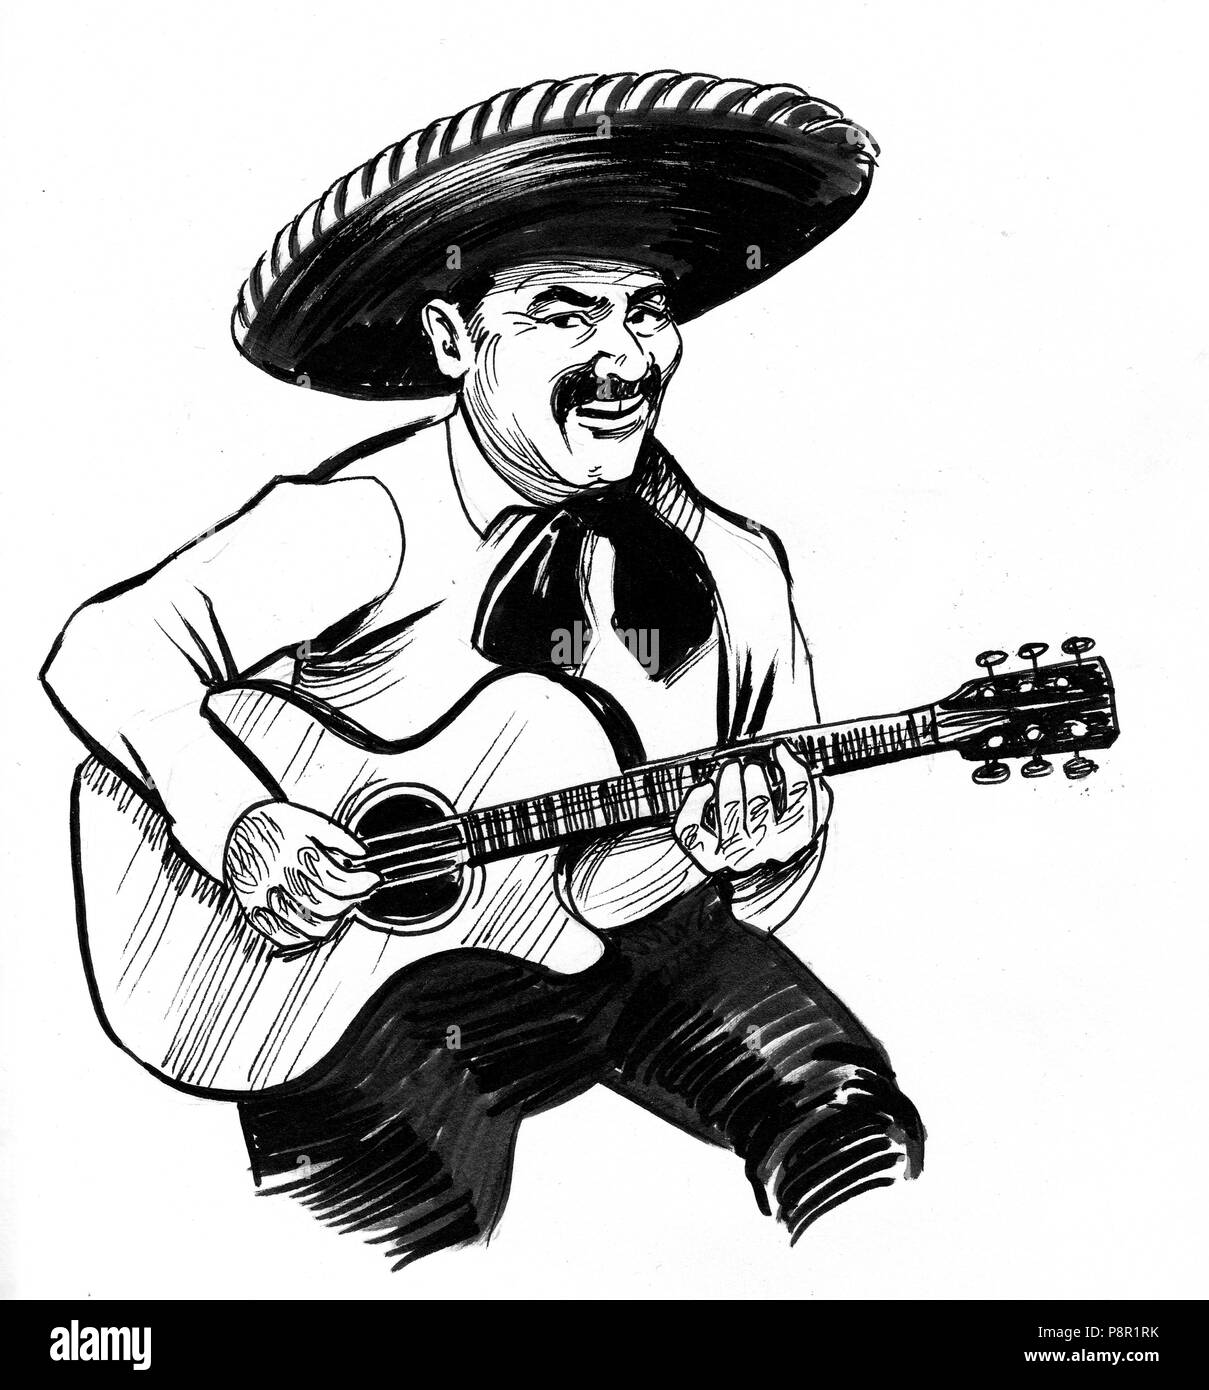 Musicien mexicain qui joue de la guitare. Illustration noir et blanc Encre Banque D'Images